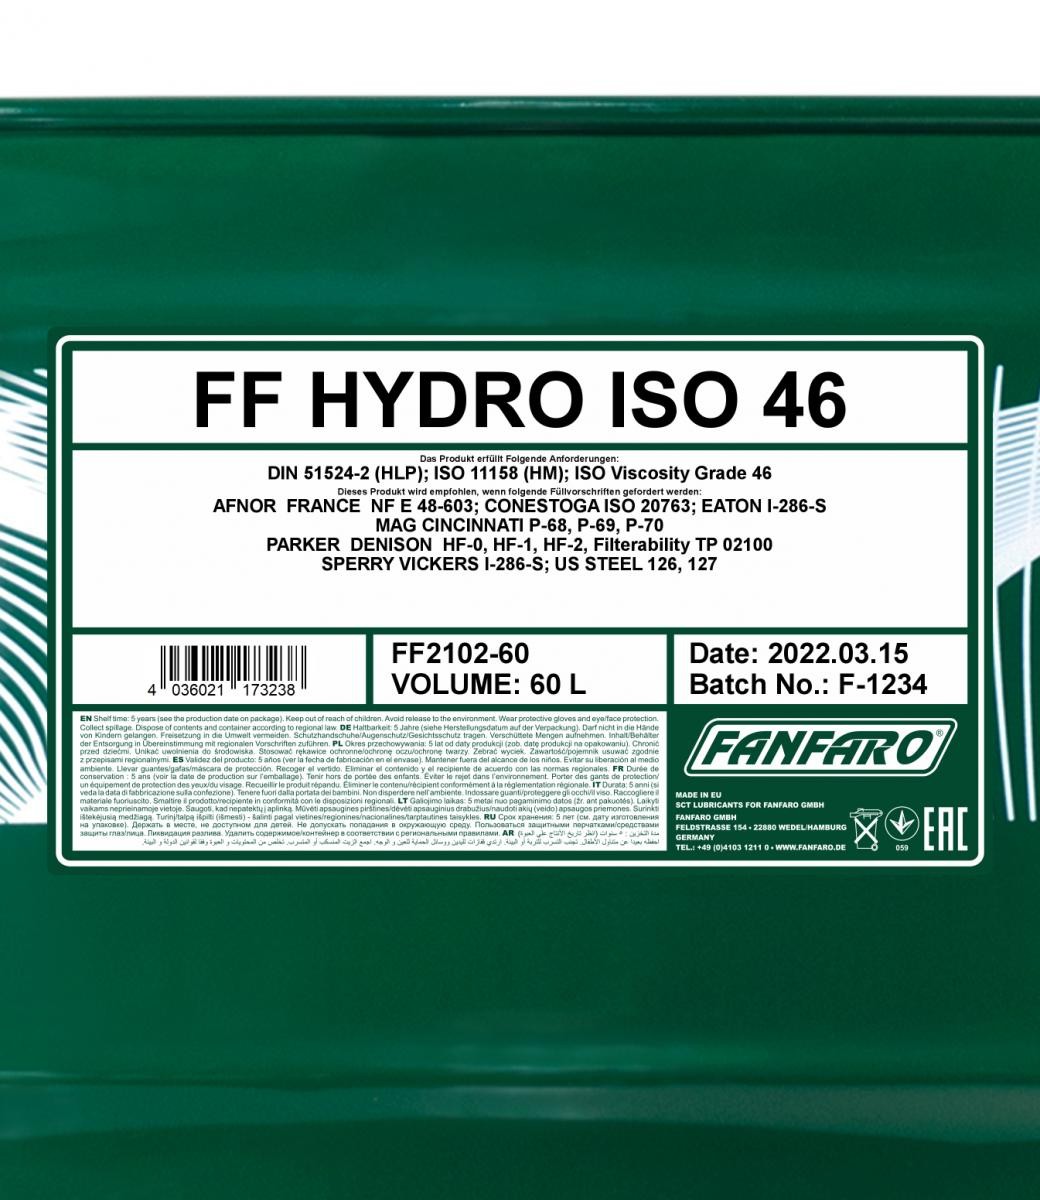 FANFARO Hydrauliköl FF2102-60